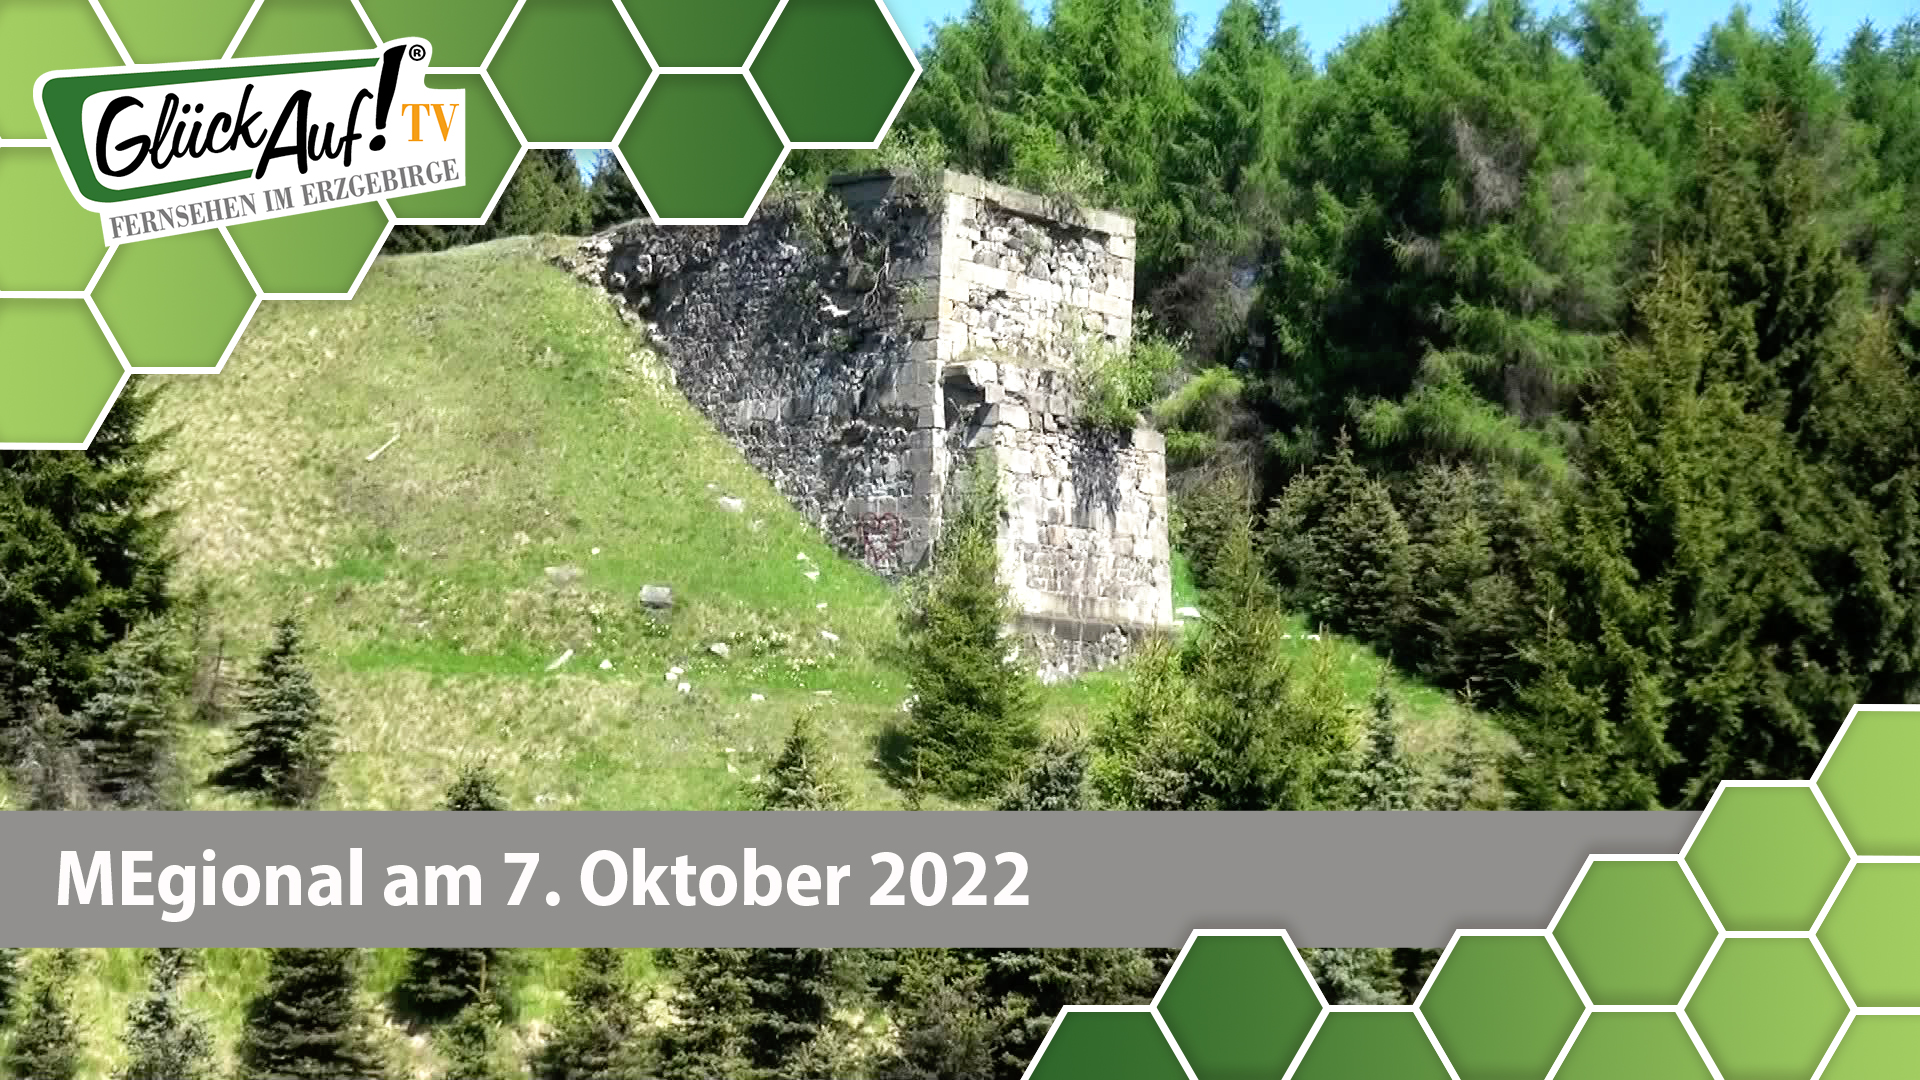 MEgional am 07. Oktober 2022 - mit der alten Bahnstrecke Reitzenhain - Chomutov